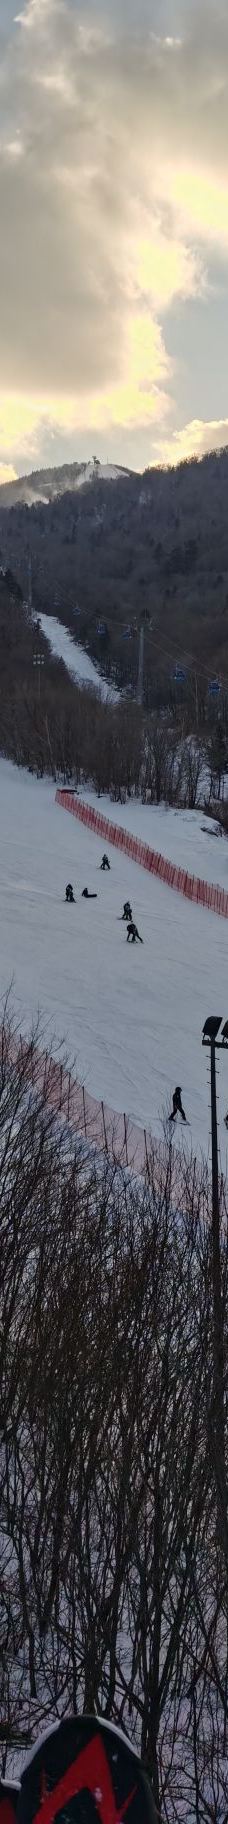 亚布力滑雪旅游度假区-尚志